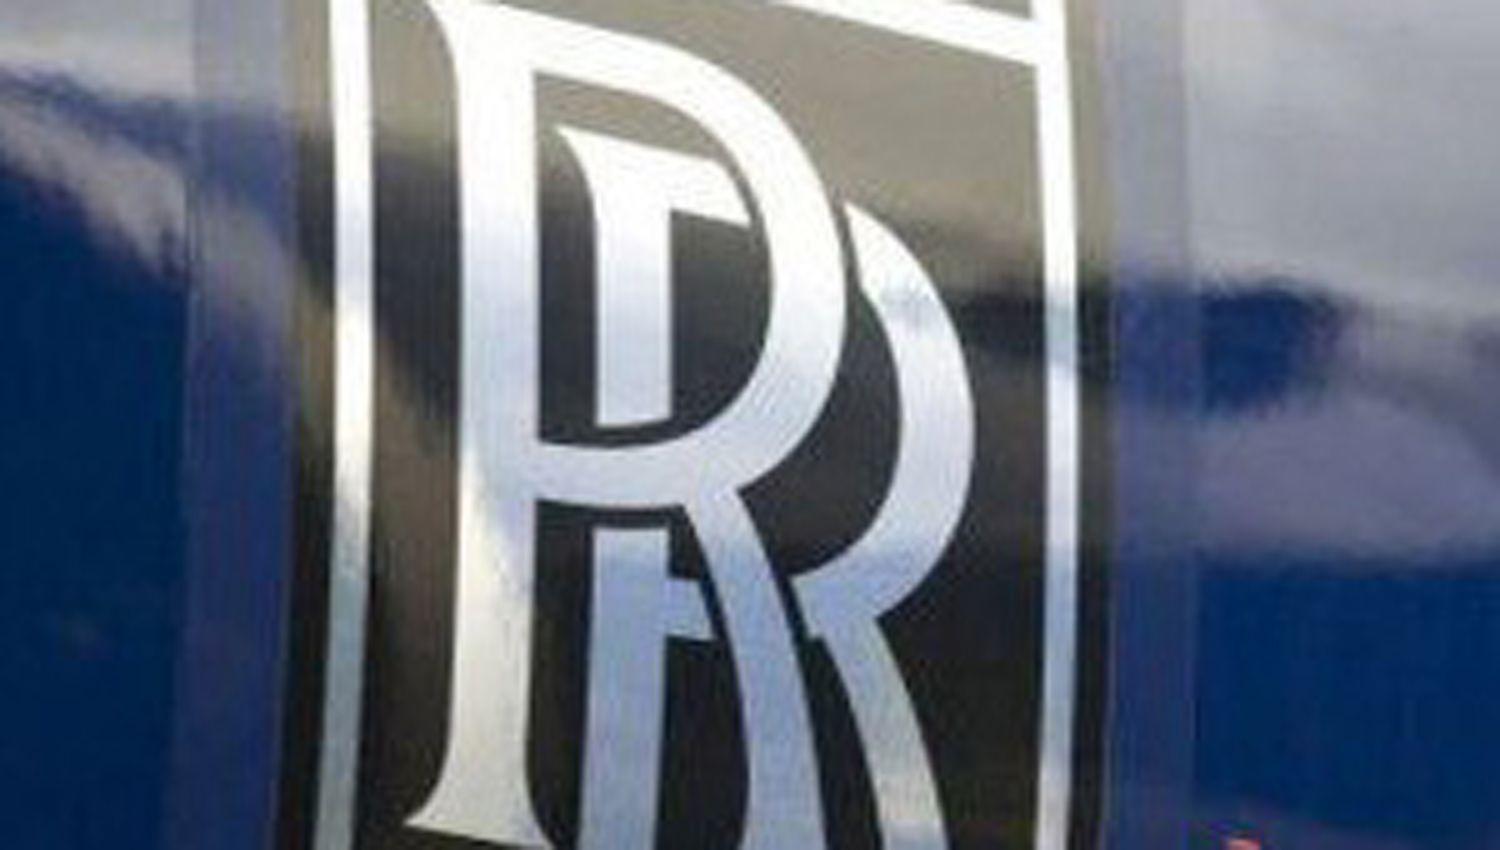 Rolls Royce despediraacute a 9 mil empleados por la pandemia